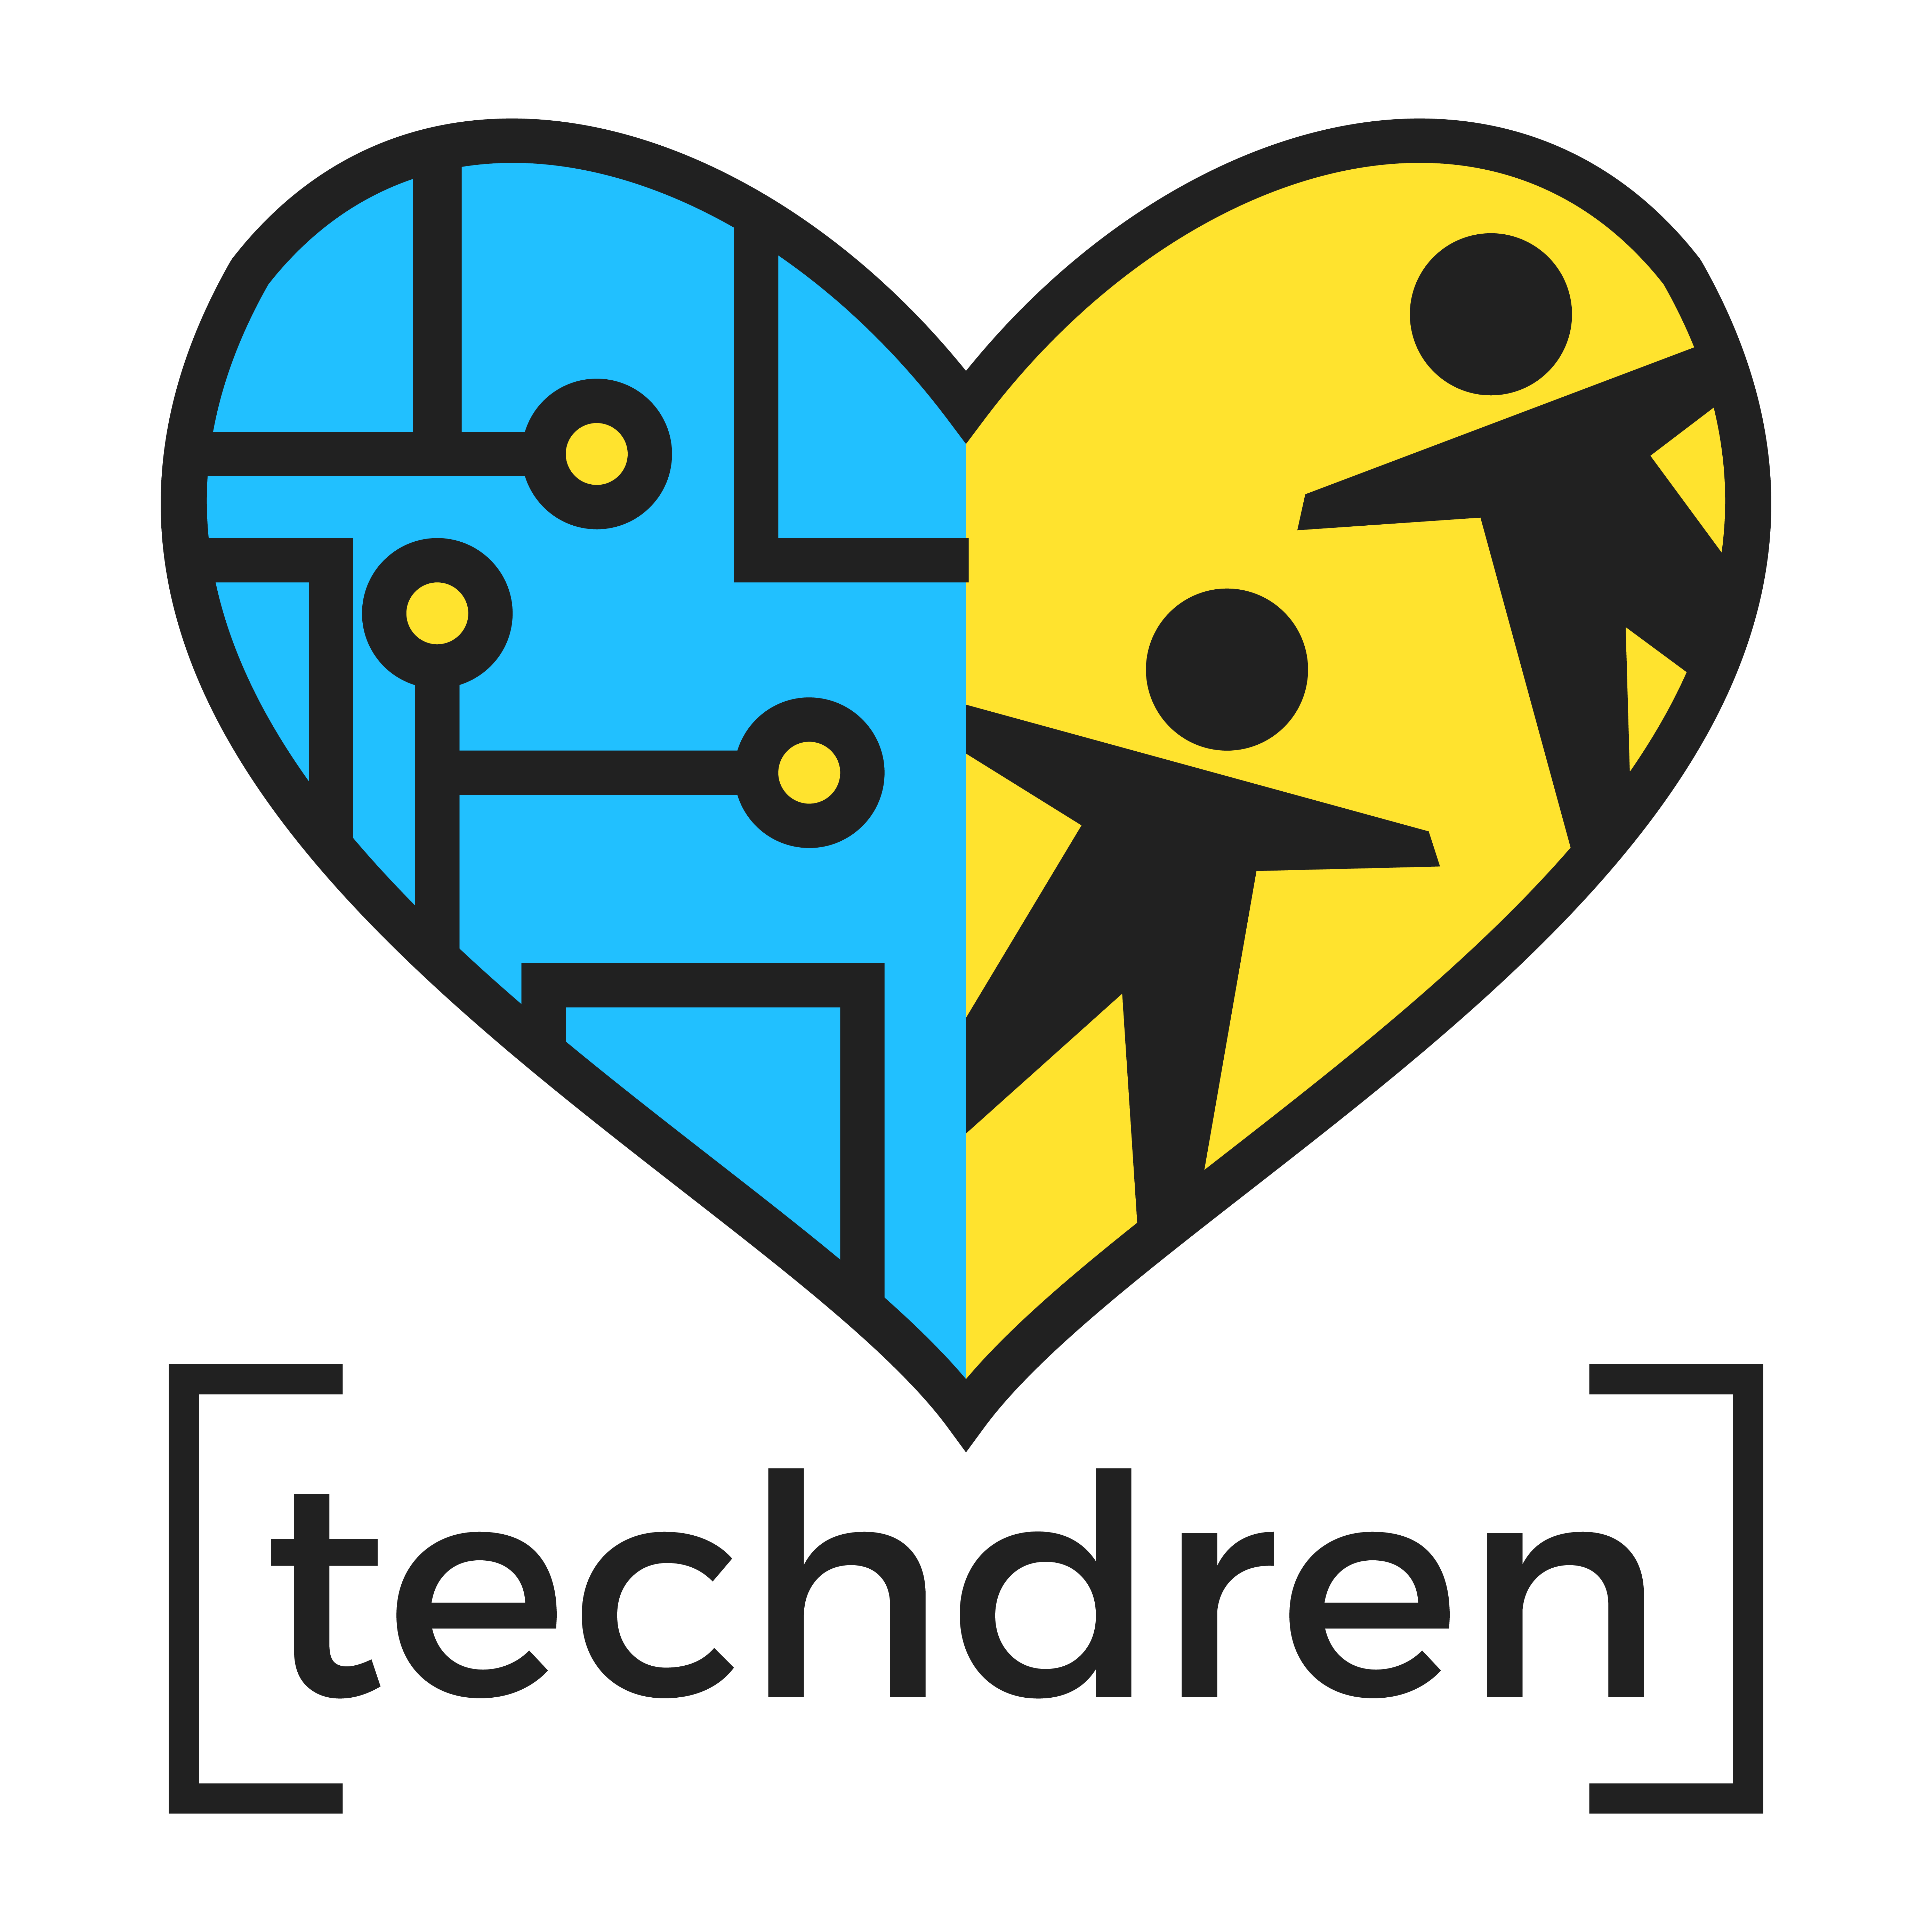 Techdren logo